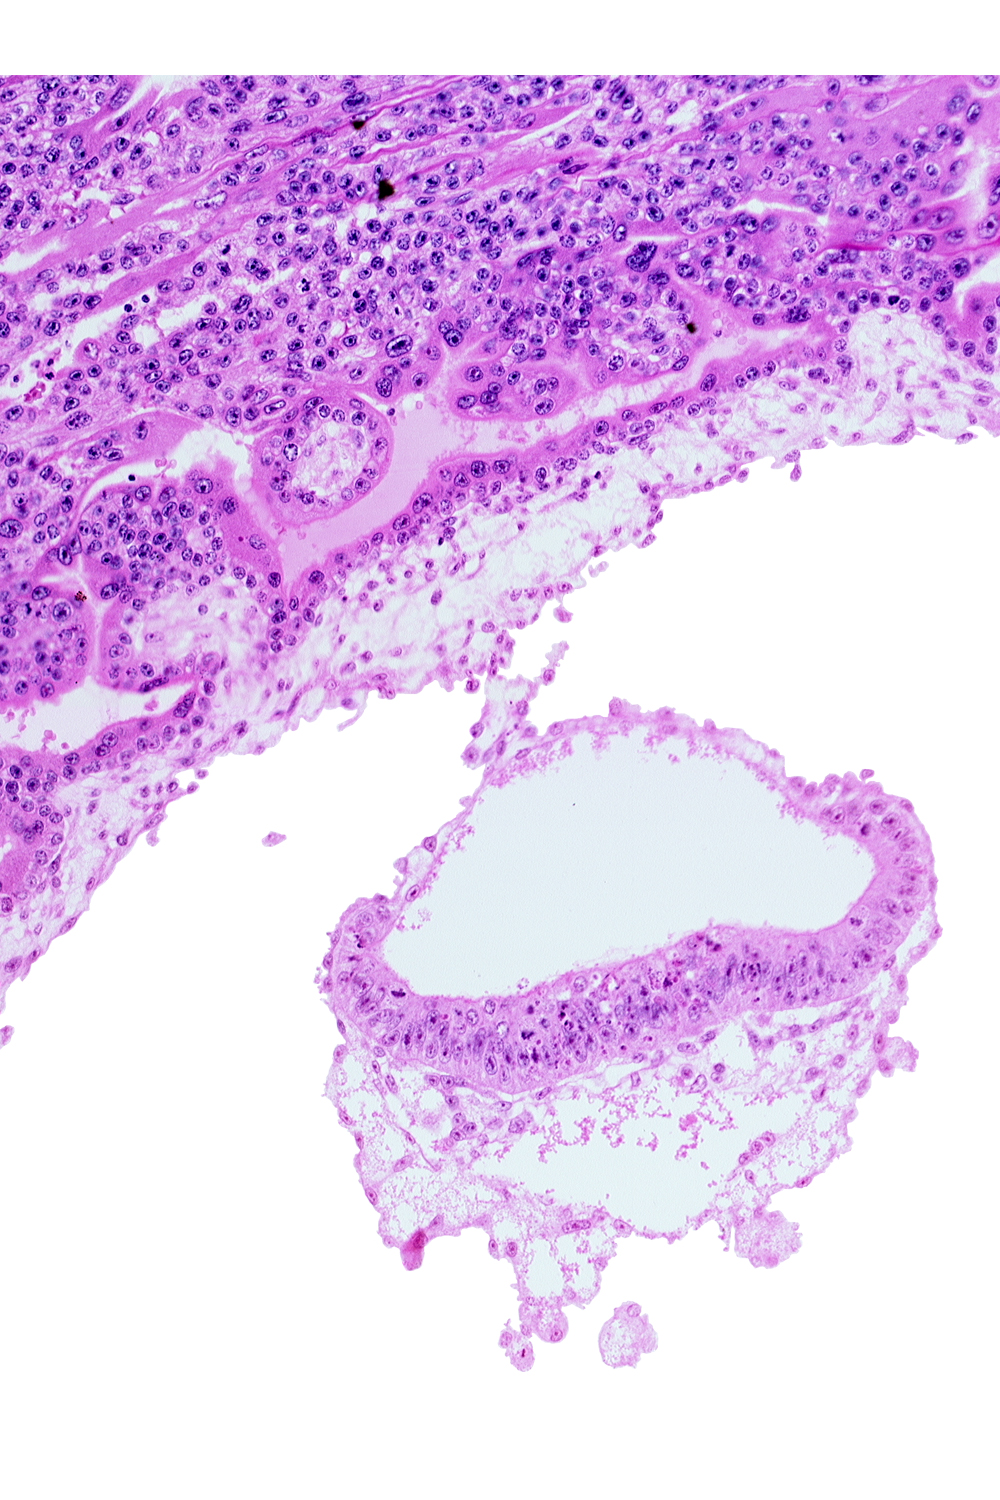 amnion, amniotic cavity, connecting stalk, epiblast, extra-embryonic endoderm, extra-embryonic mesoblast, head mesenchyme, hypoblast, umbilical vesicle cavity